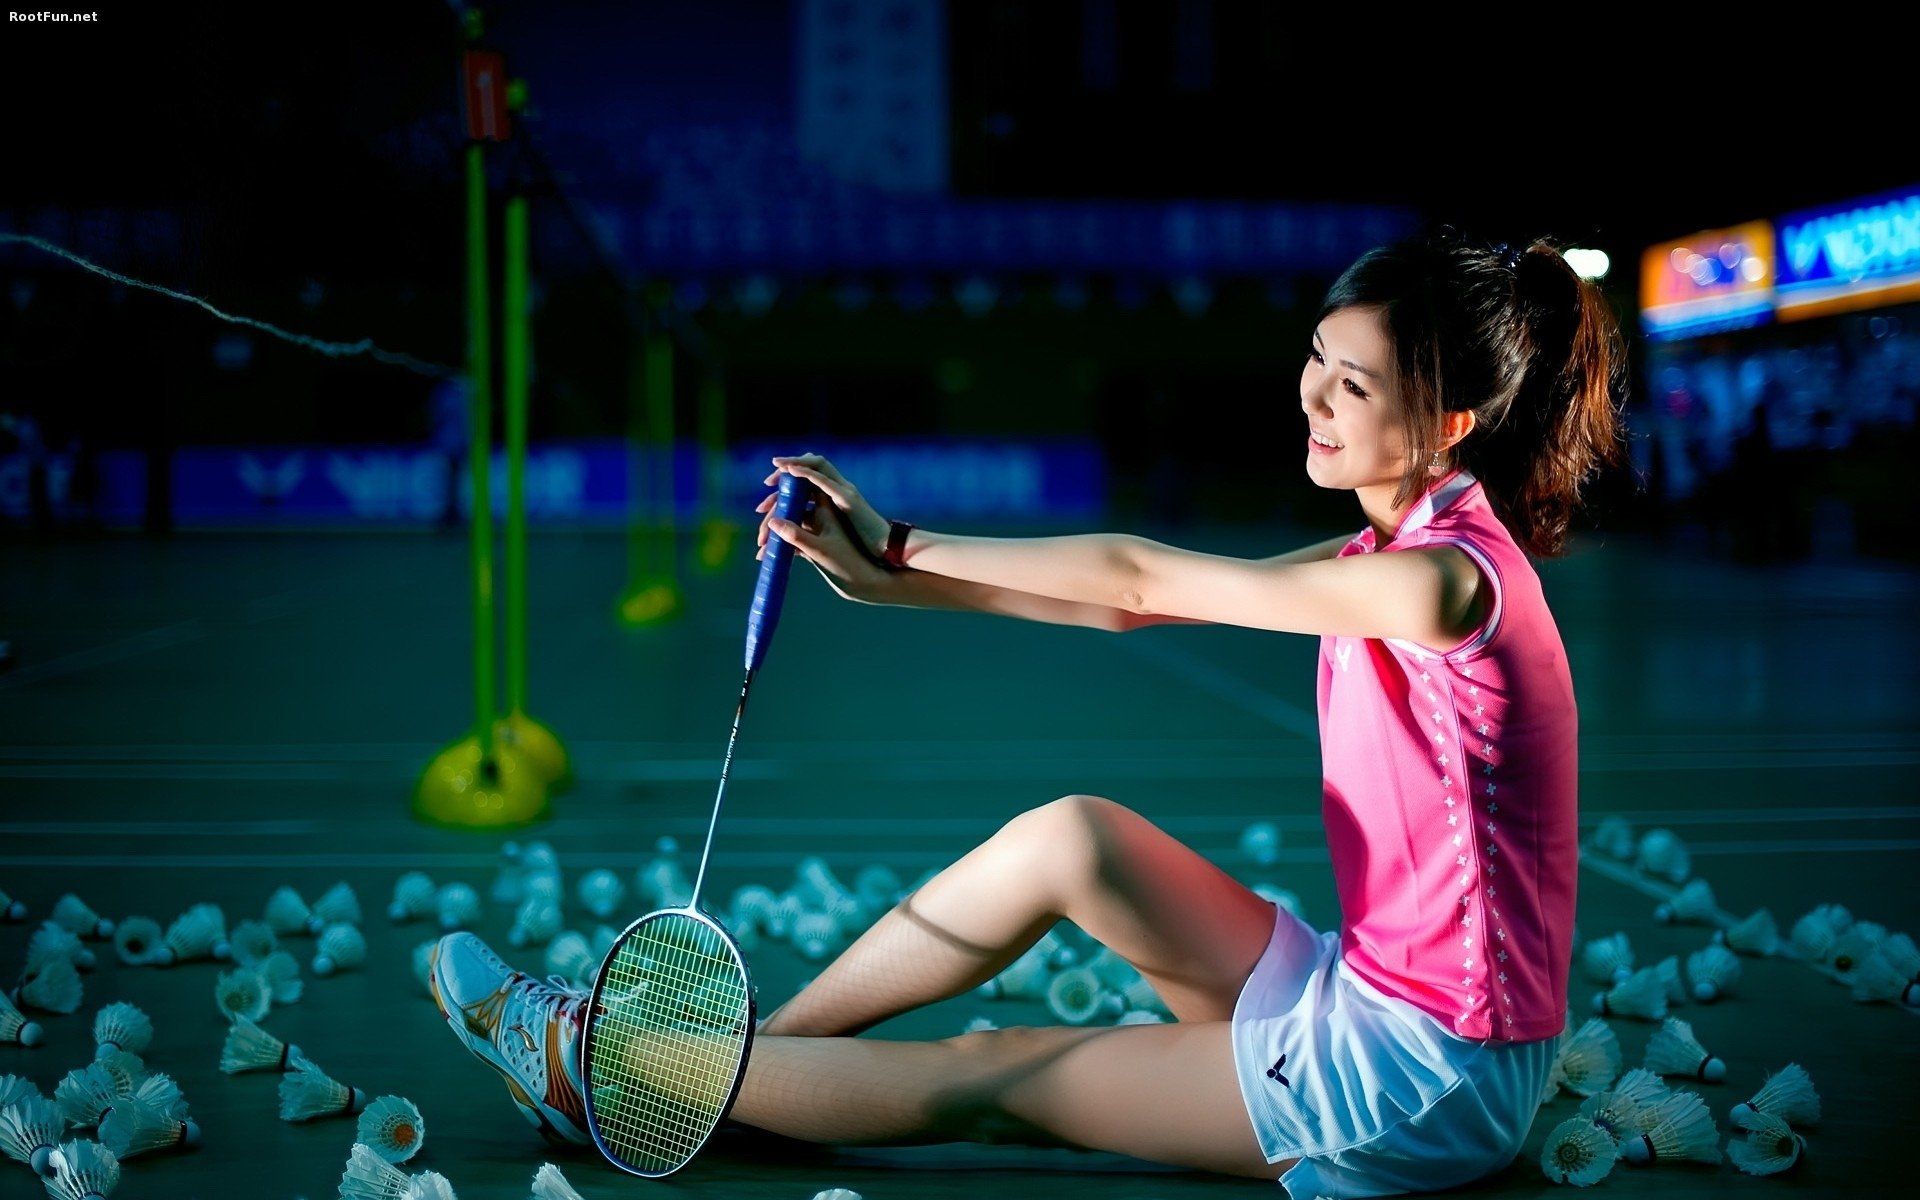 badminton background